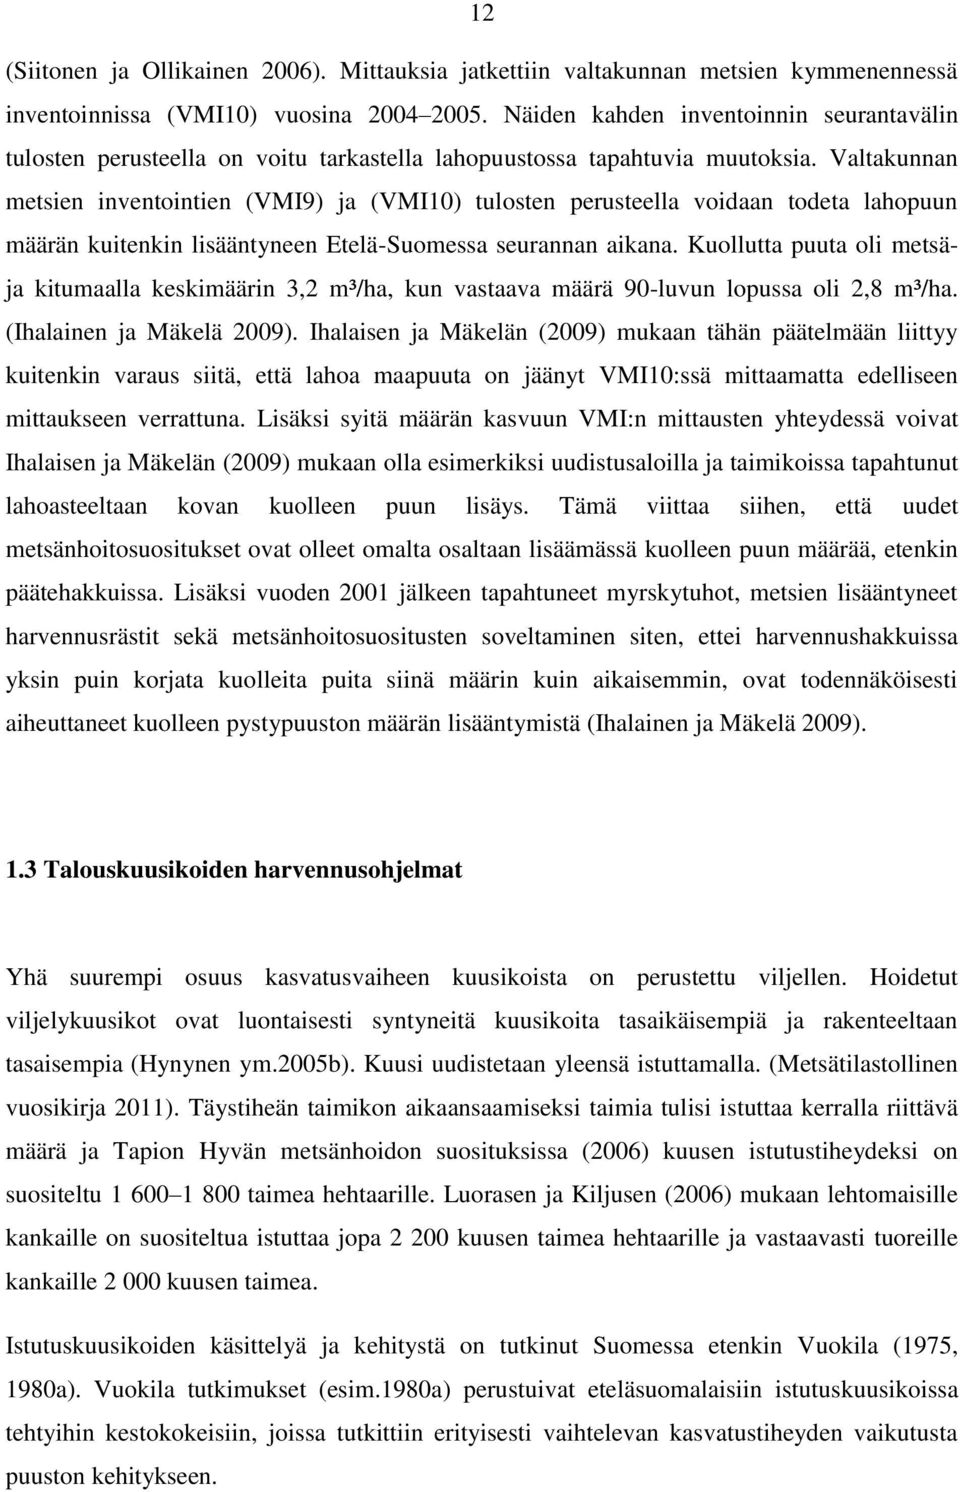 Valtakunnan metsien inventointien (VMI9) ja (VMI10) tulosten perusteella voidaan todeta lahopuun määrän kuitenkin lisääntyneen Etelä-Suomessa seurannan aikana.